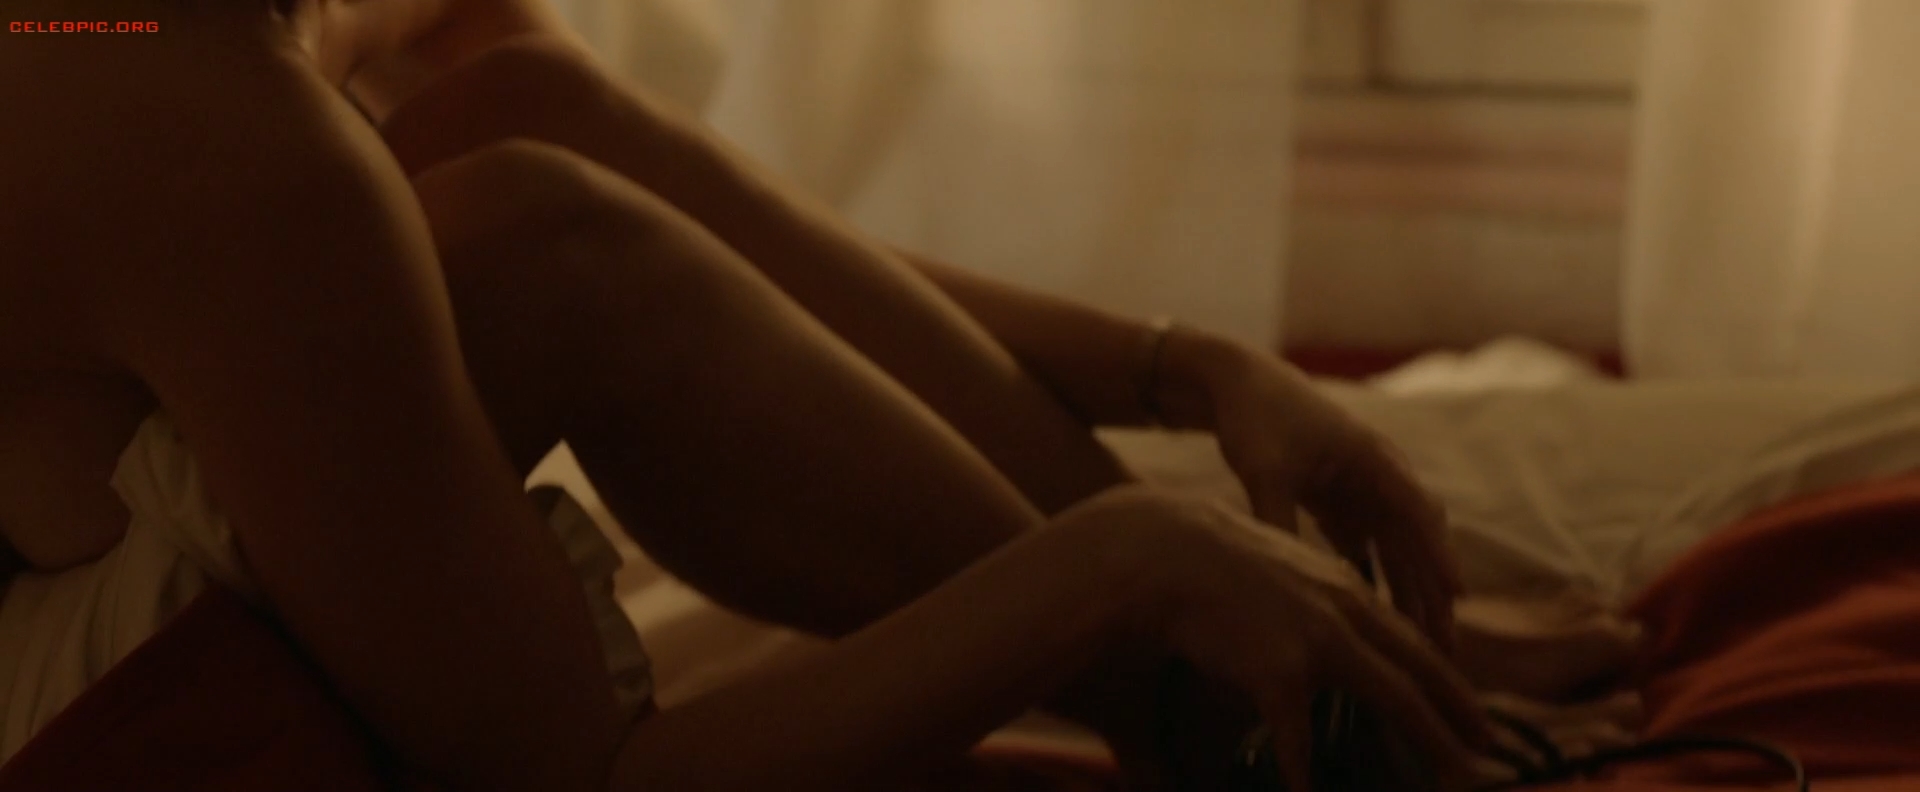 Gemma Arterton - The Escape 1080p (1) 1610.jpg